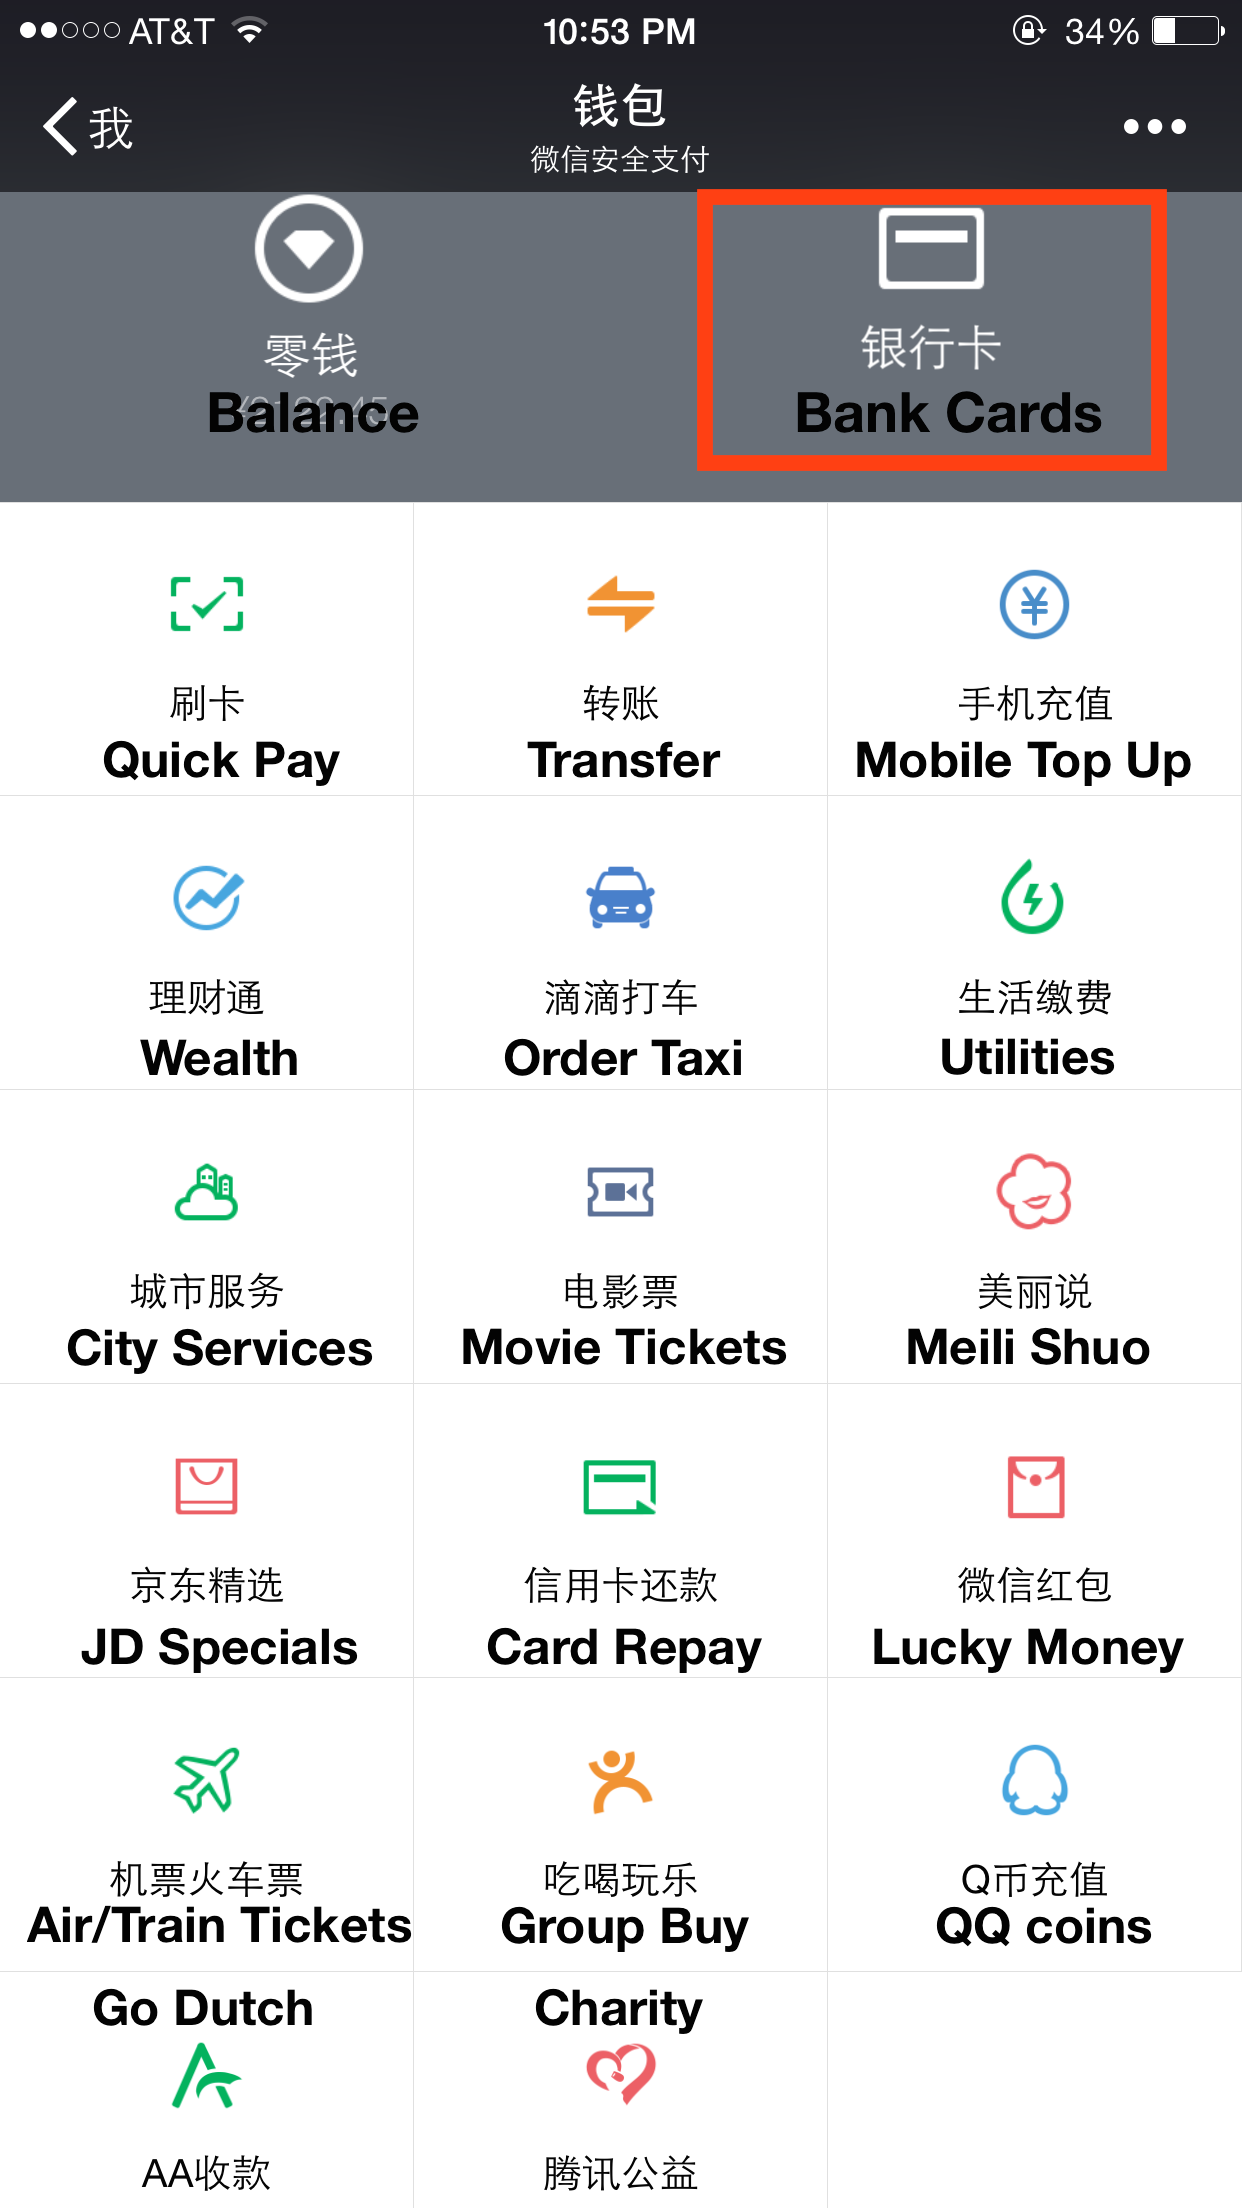 WeChat quiere conquistar todo tu teléfono móvil